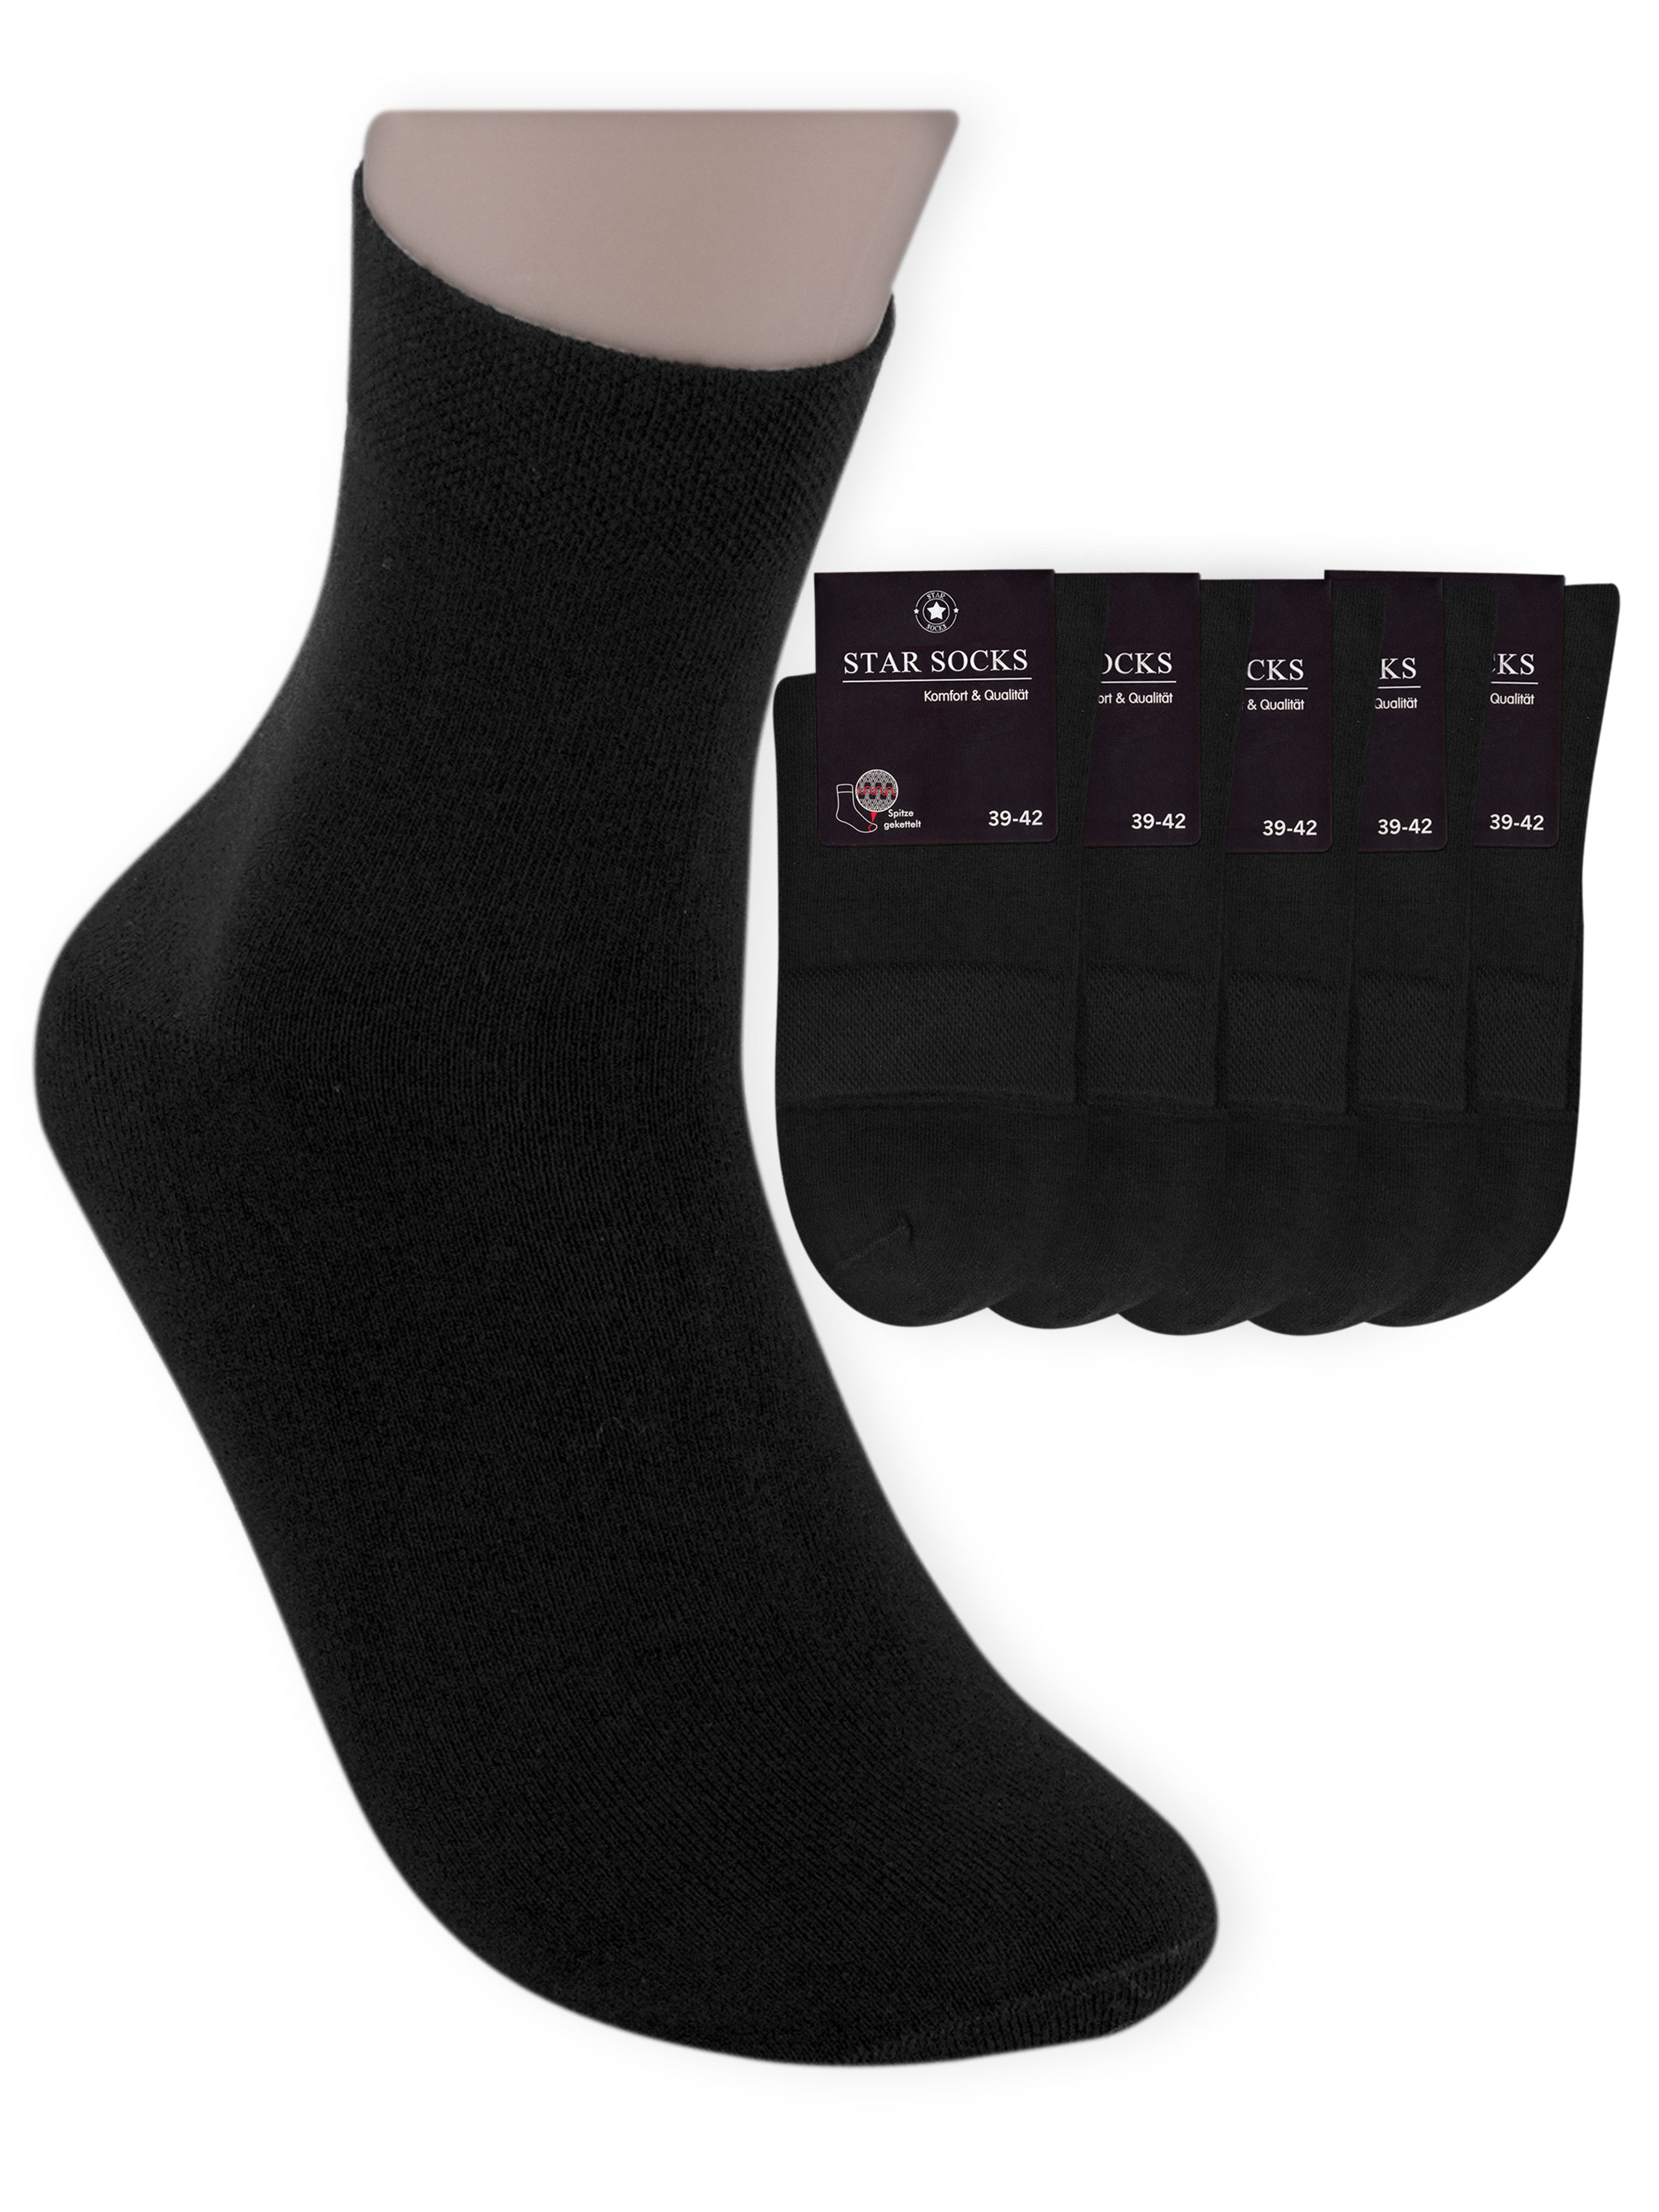 Die Sockenbude Kurzsocken BLACK - Herrensocken (Bund, 5-Paar, schwarz) Business-Socken mit Komfortbund ohne Gummi